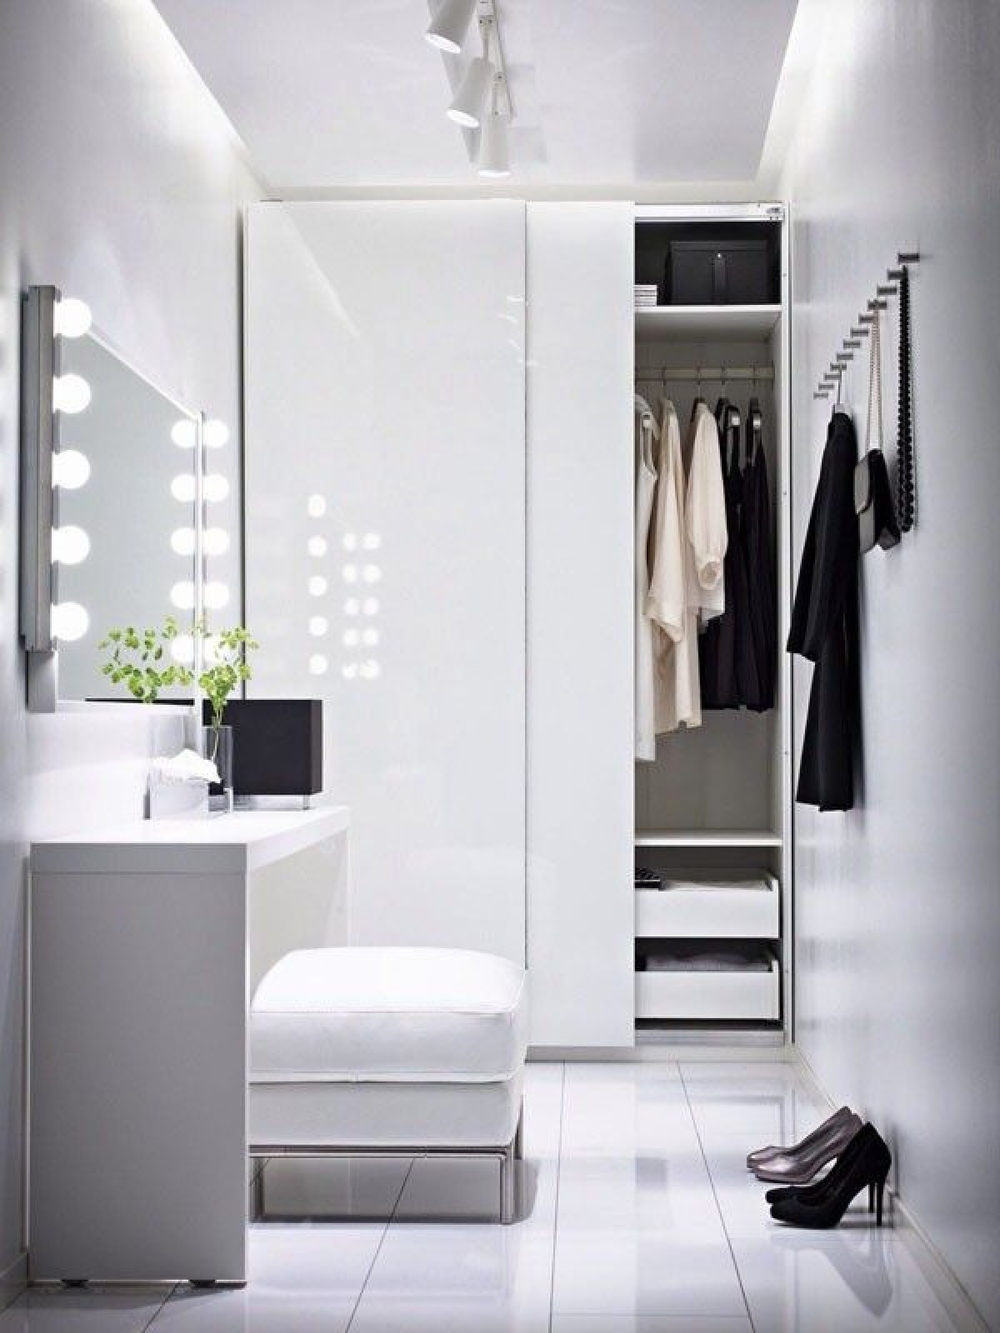 Mẹo thiết kế ánh sáng cho tủ quần áo, phòng thay đồ - Ảnh 1.